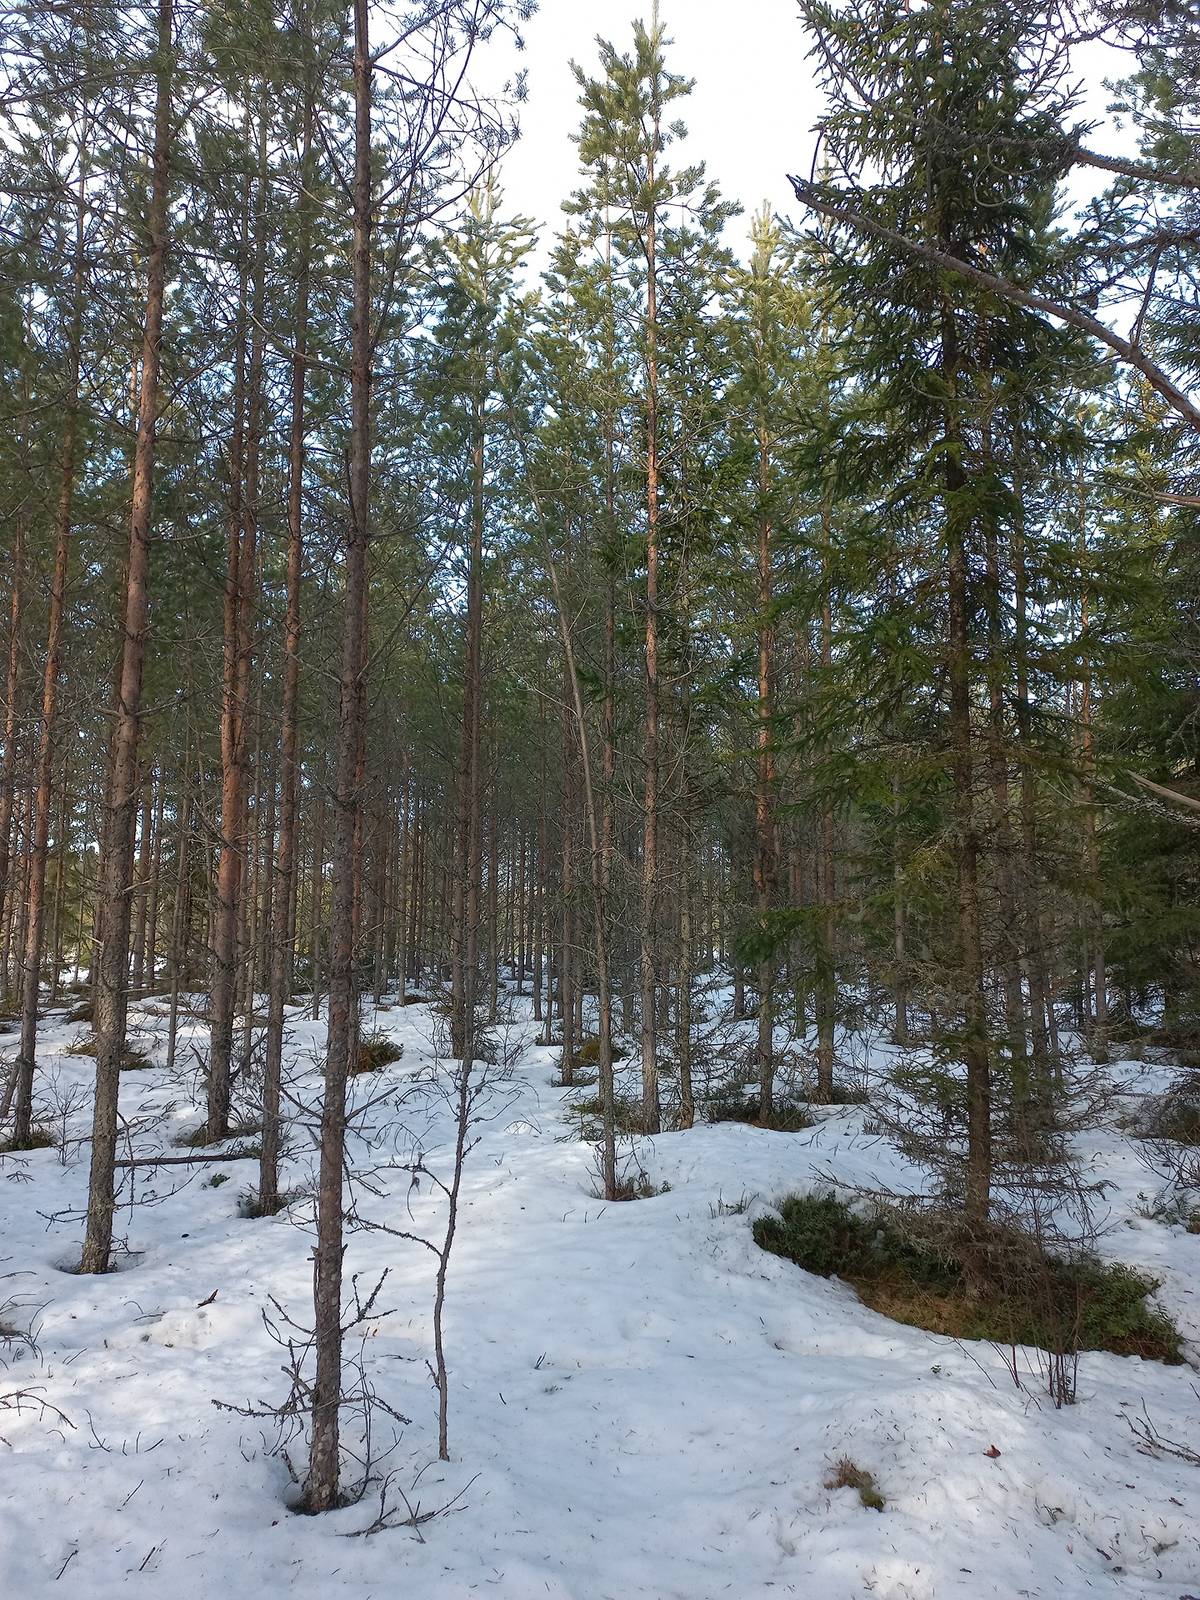 Omslagsbild för objektet Jalasjärvi Teräsyrttimaa 164-403-4-84